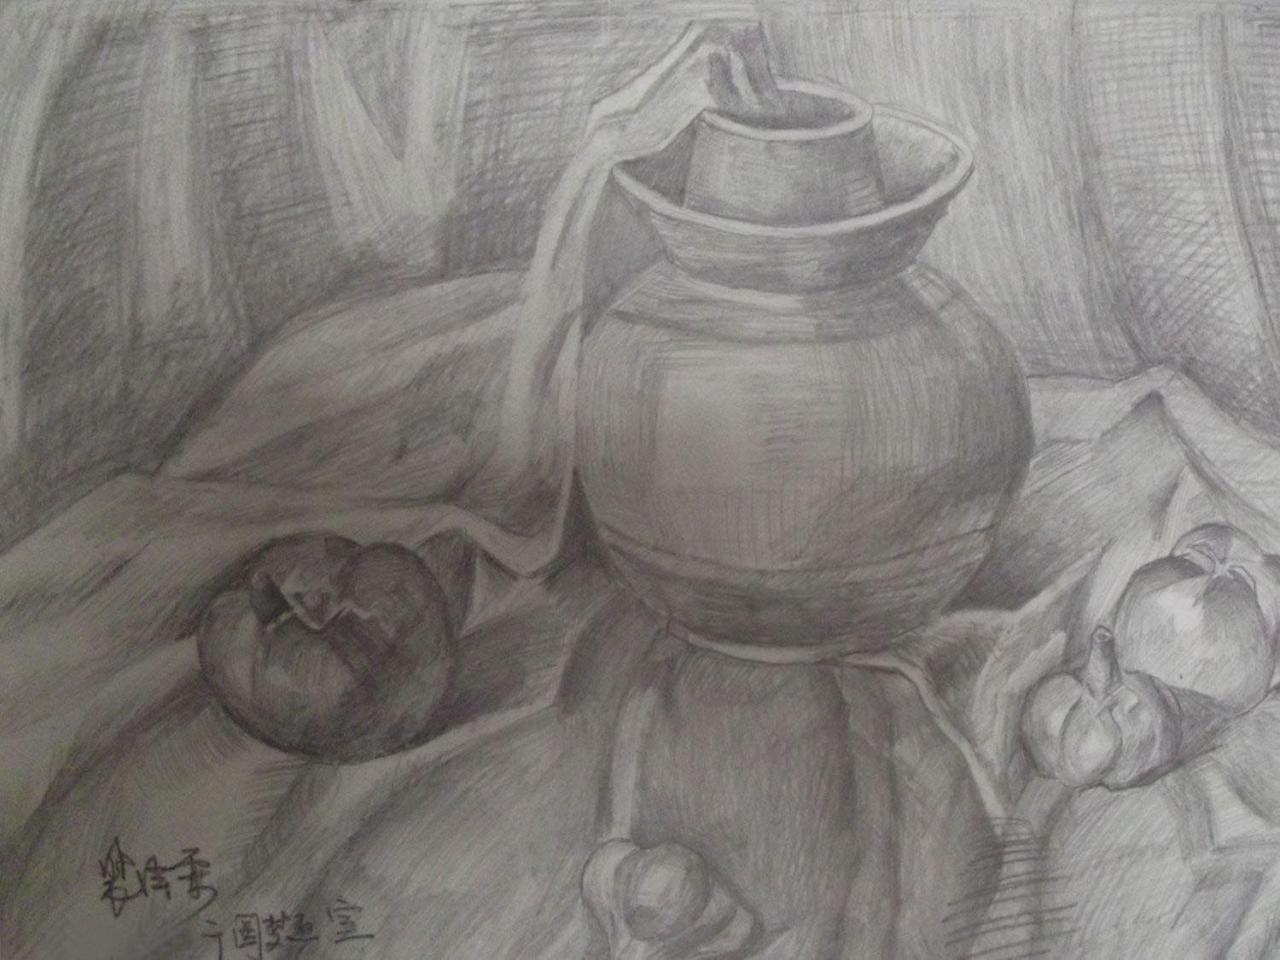 陶罐、西红柿、蒜、洋葱等 静物素描 裴泽霖画